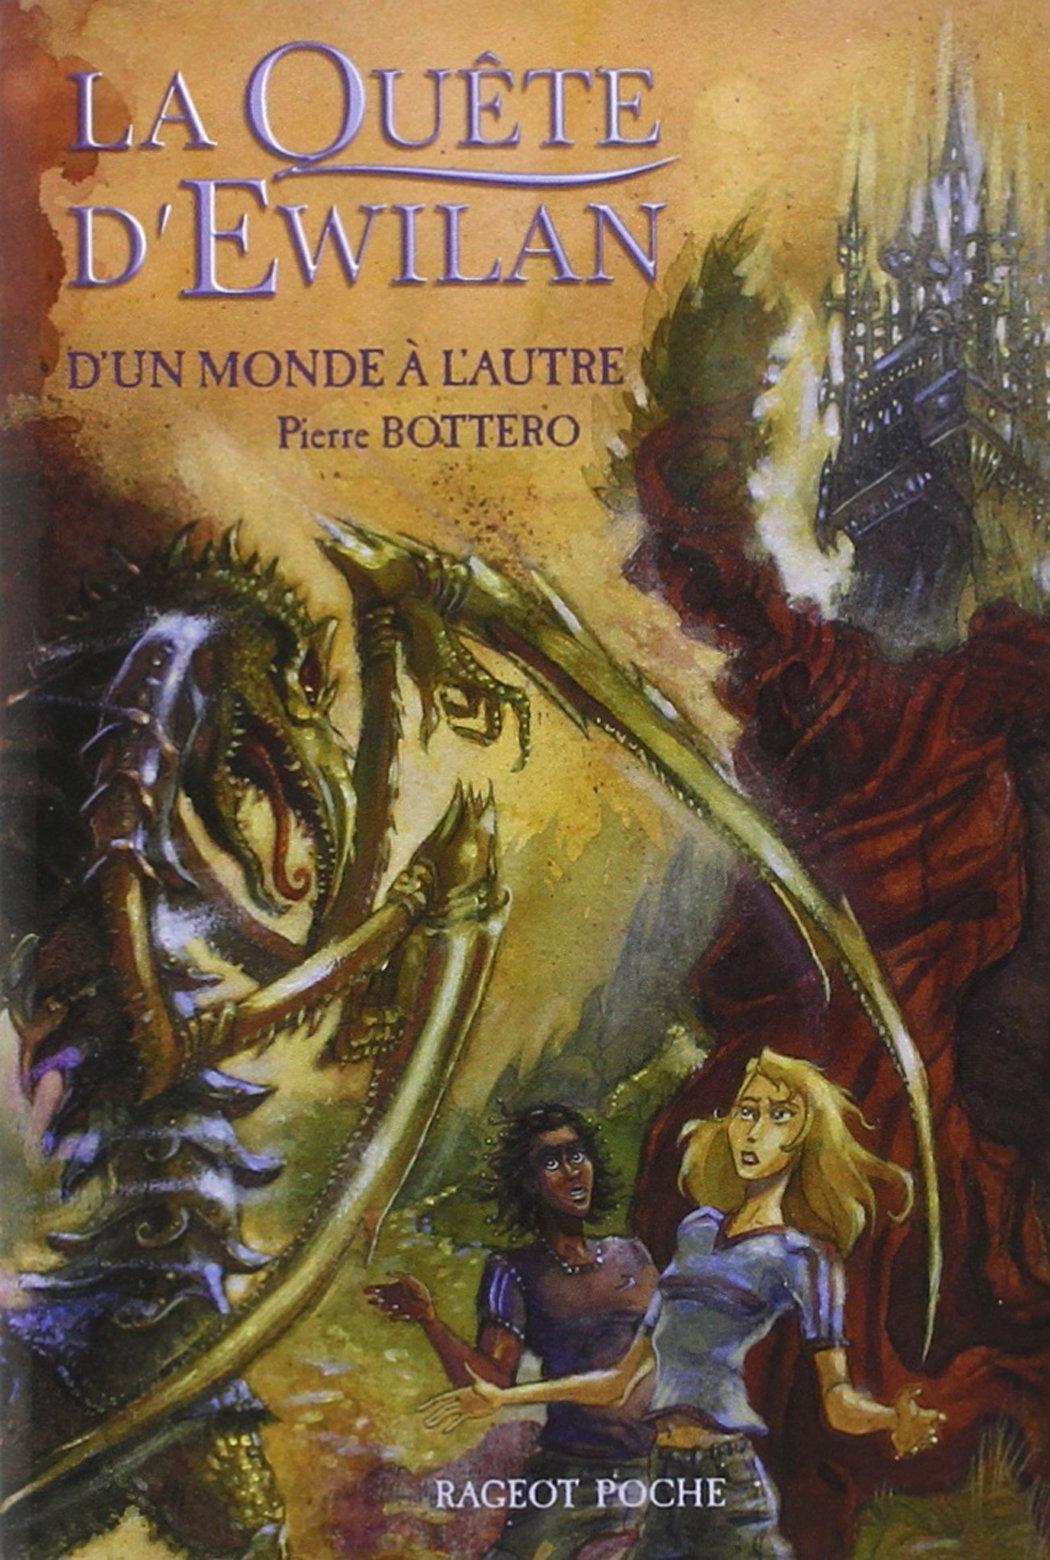 Pierre Bottero: D’un monde à l’autre (Paperback, French language, 2006, Rageot Editeur)